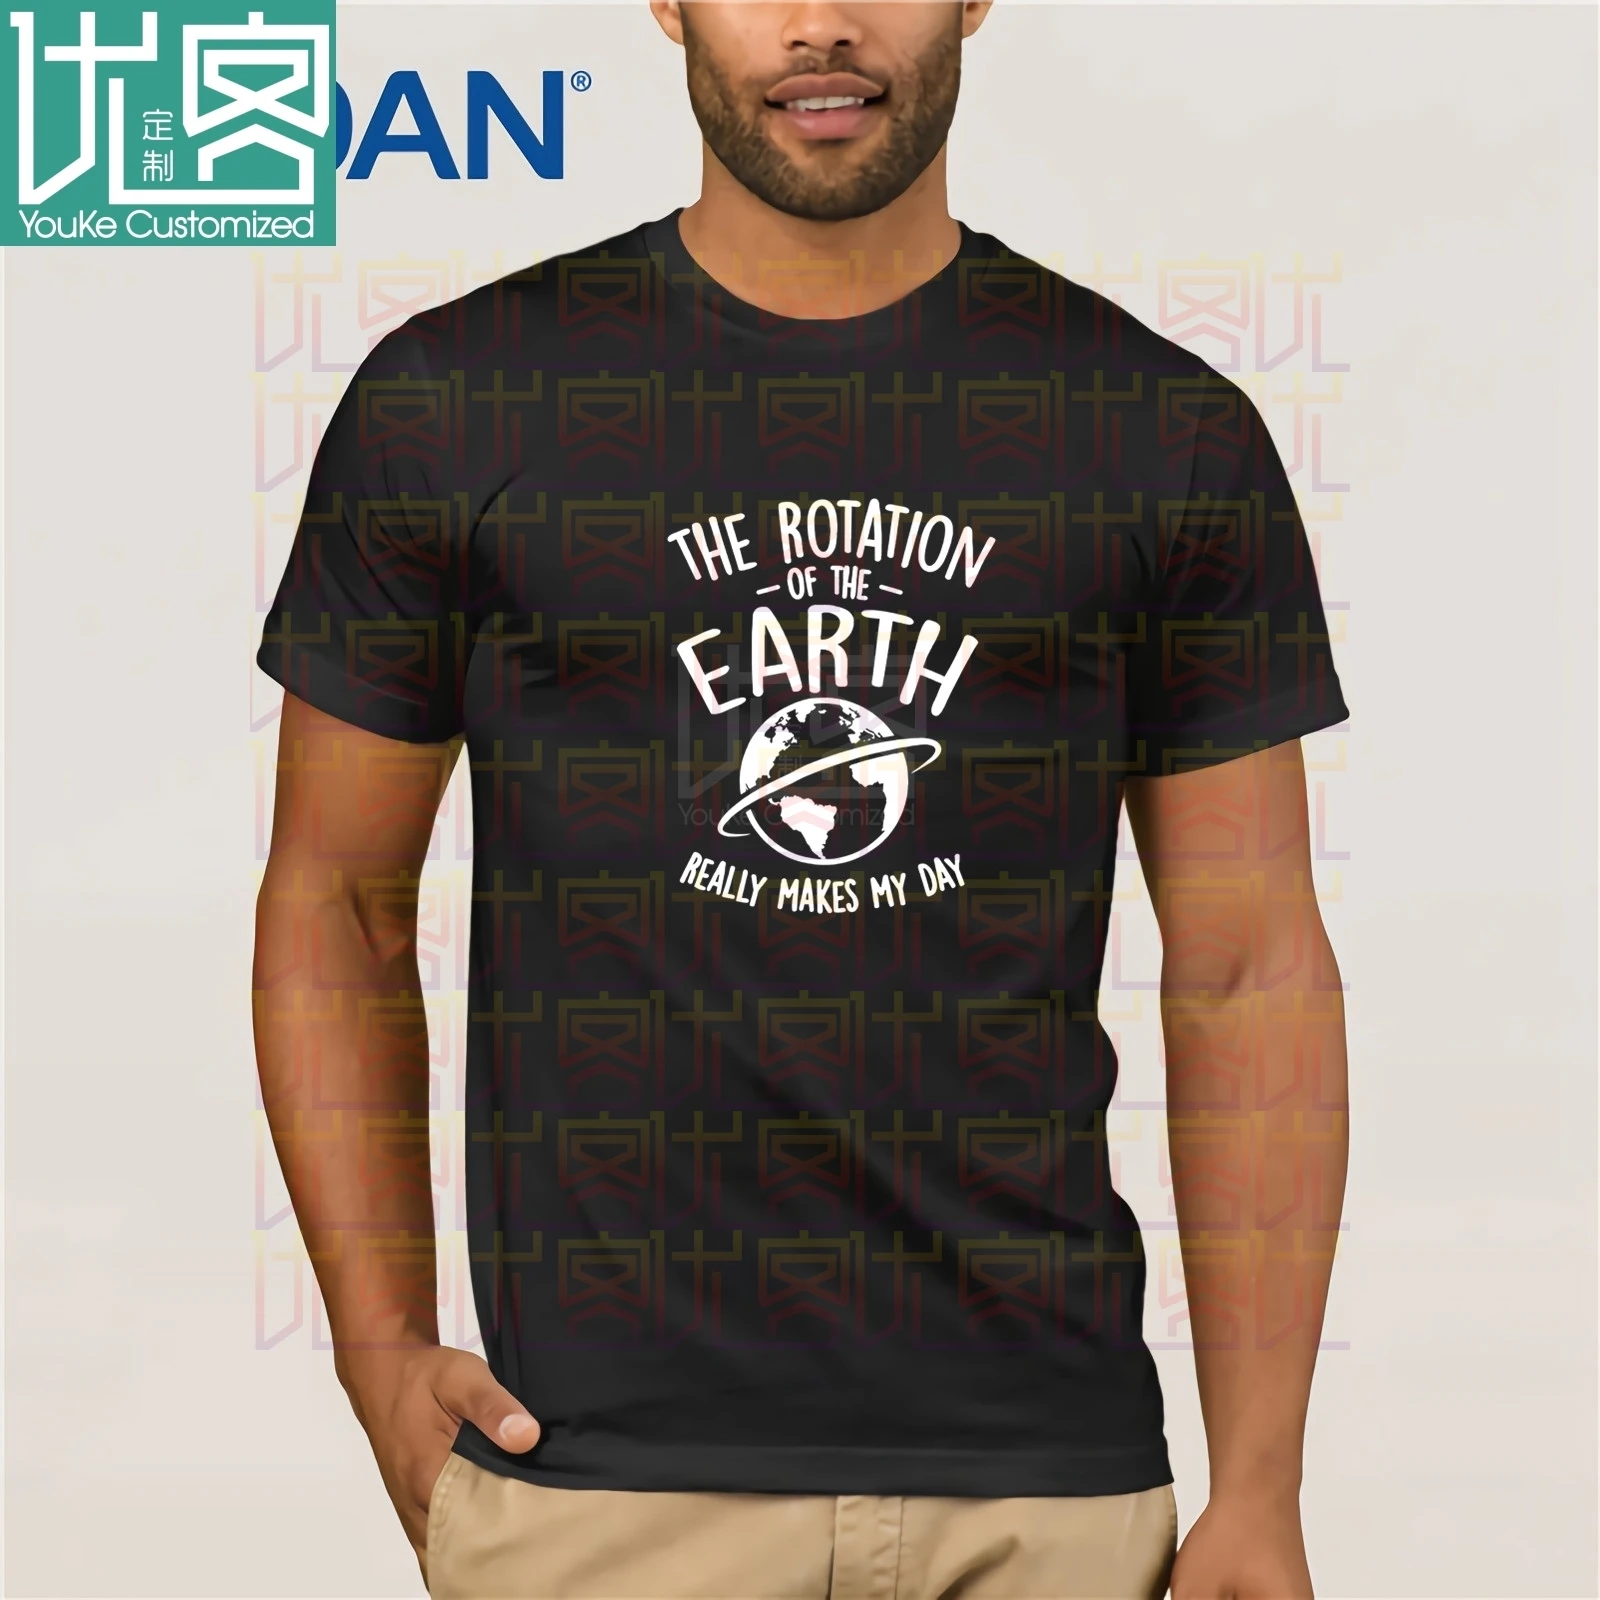 Oblačila Vrtenja Zemlje Res Naredi Moj Dan Prostora 4681 T-Shirt 2020 Herren Classic T-Shirt Kratek Rokav Tee